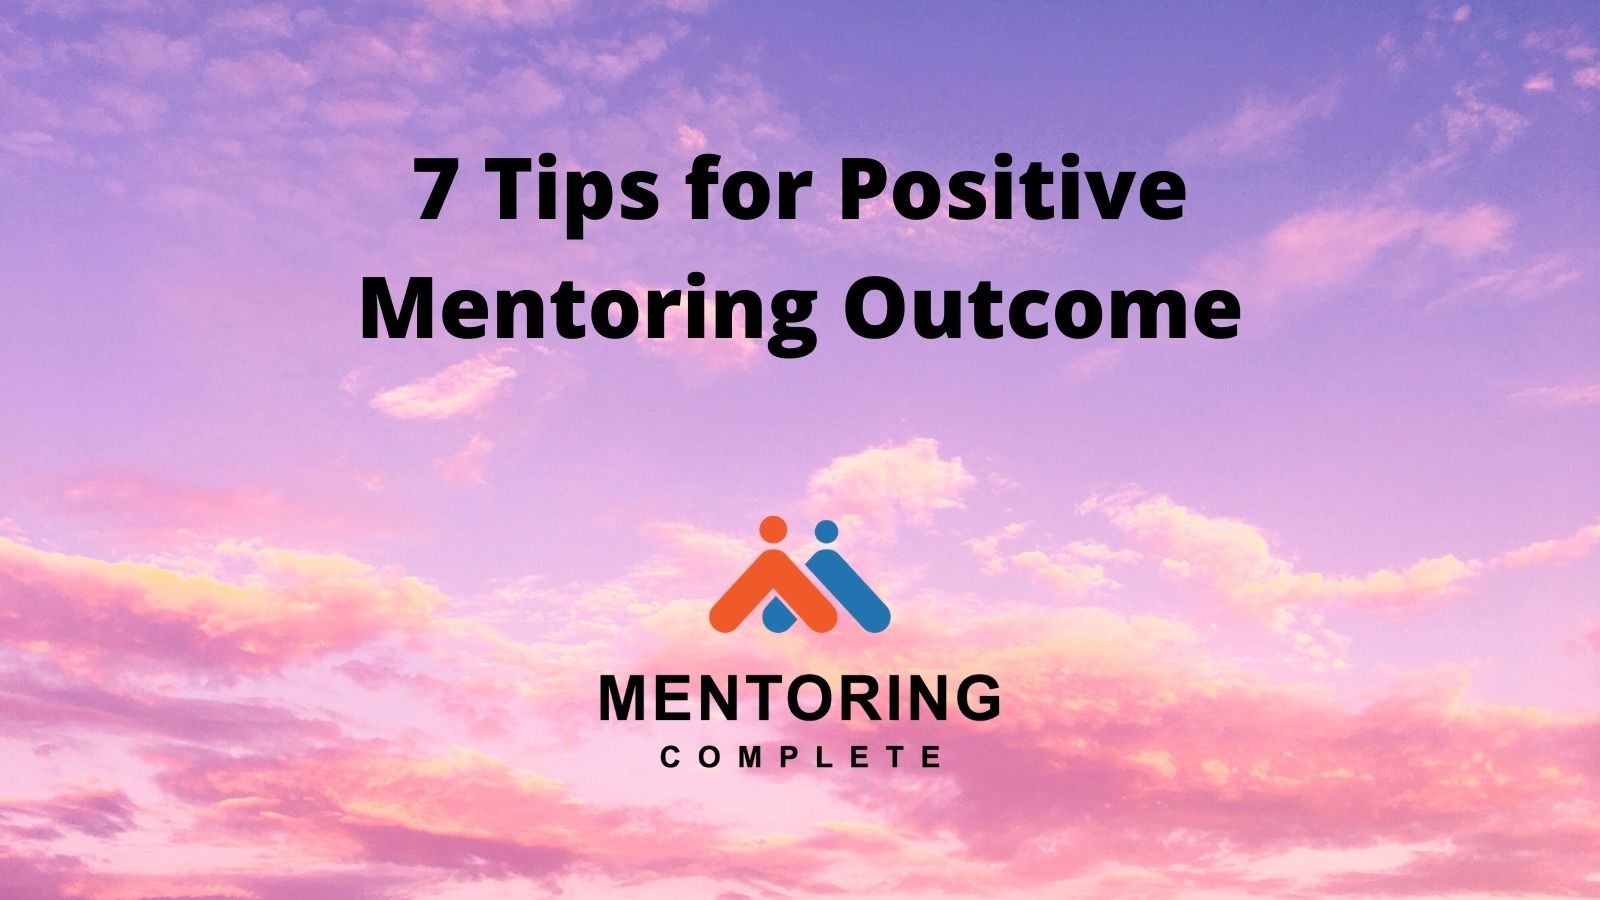 7 Tips for Positive Mentoring Outcome